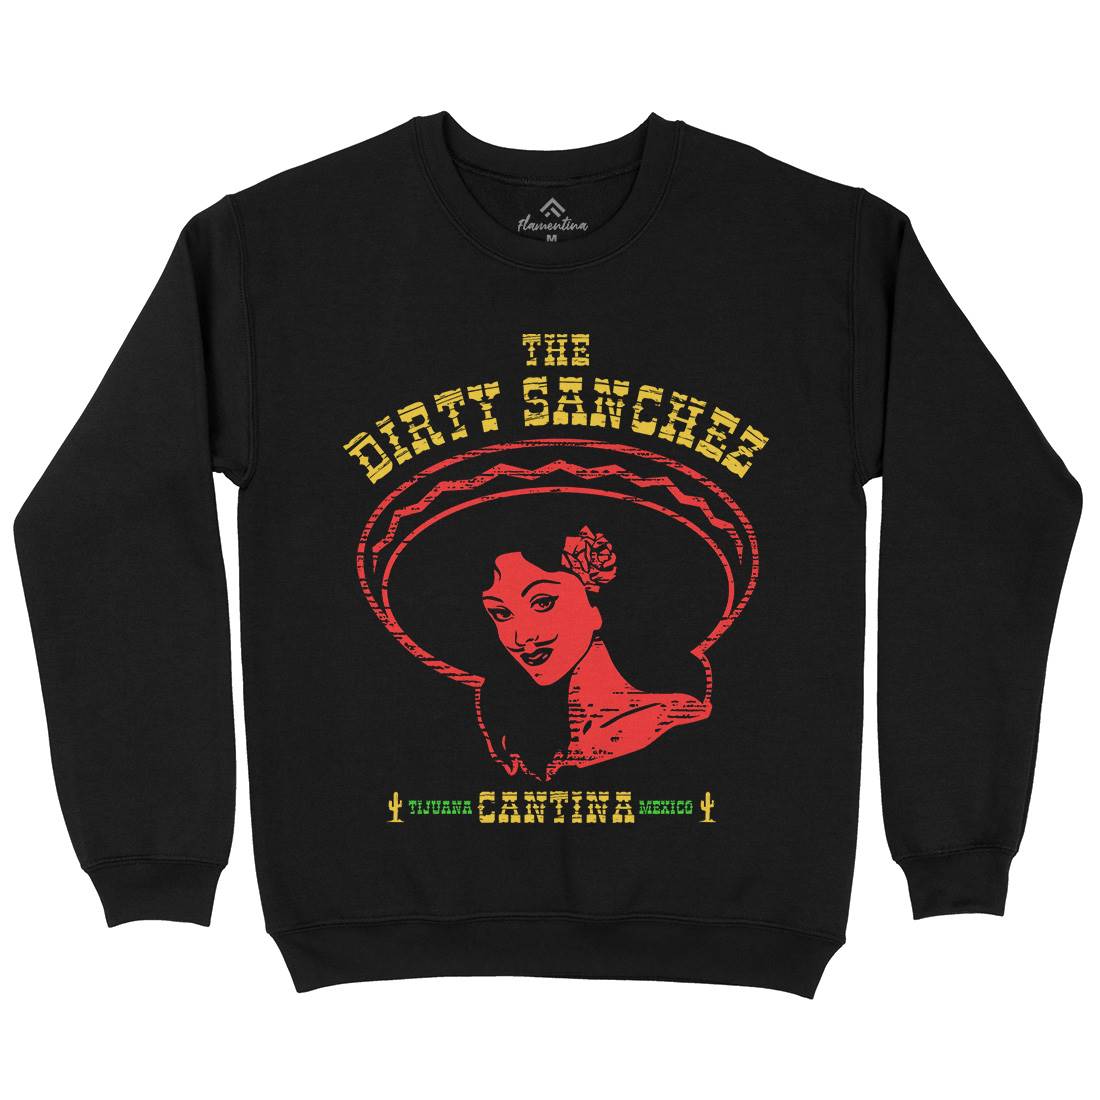 Dirty Sanchez Kids Crew Neck Sweatshirt Retro D354